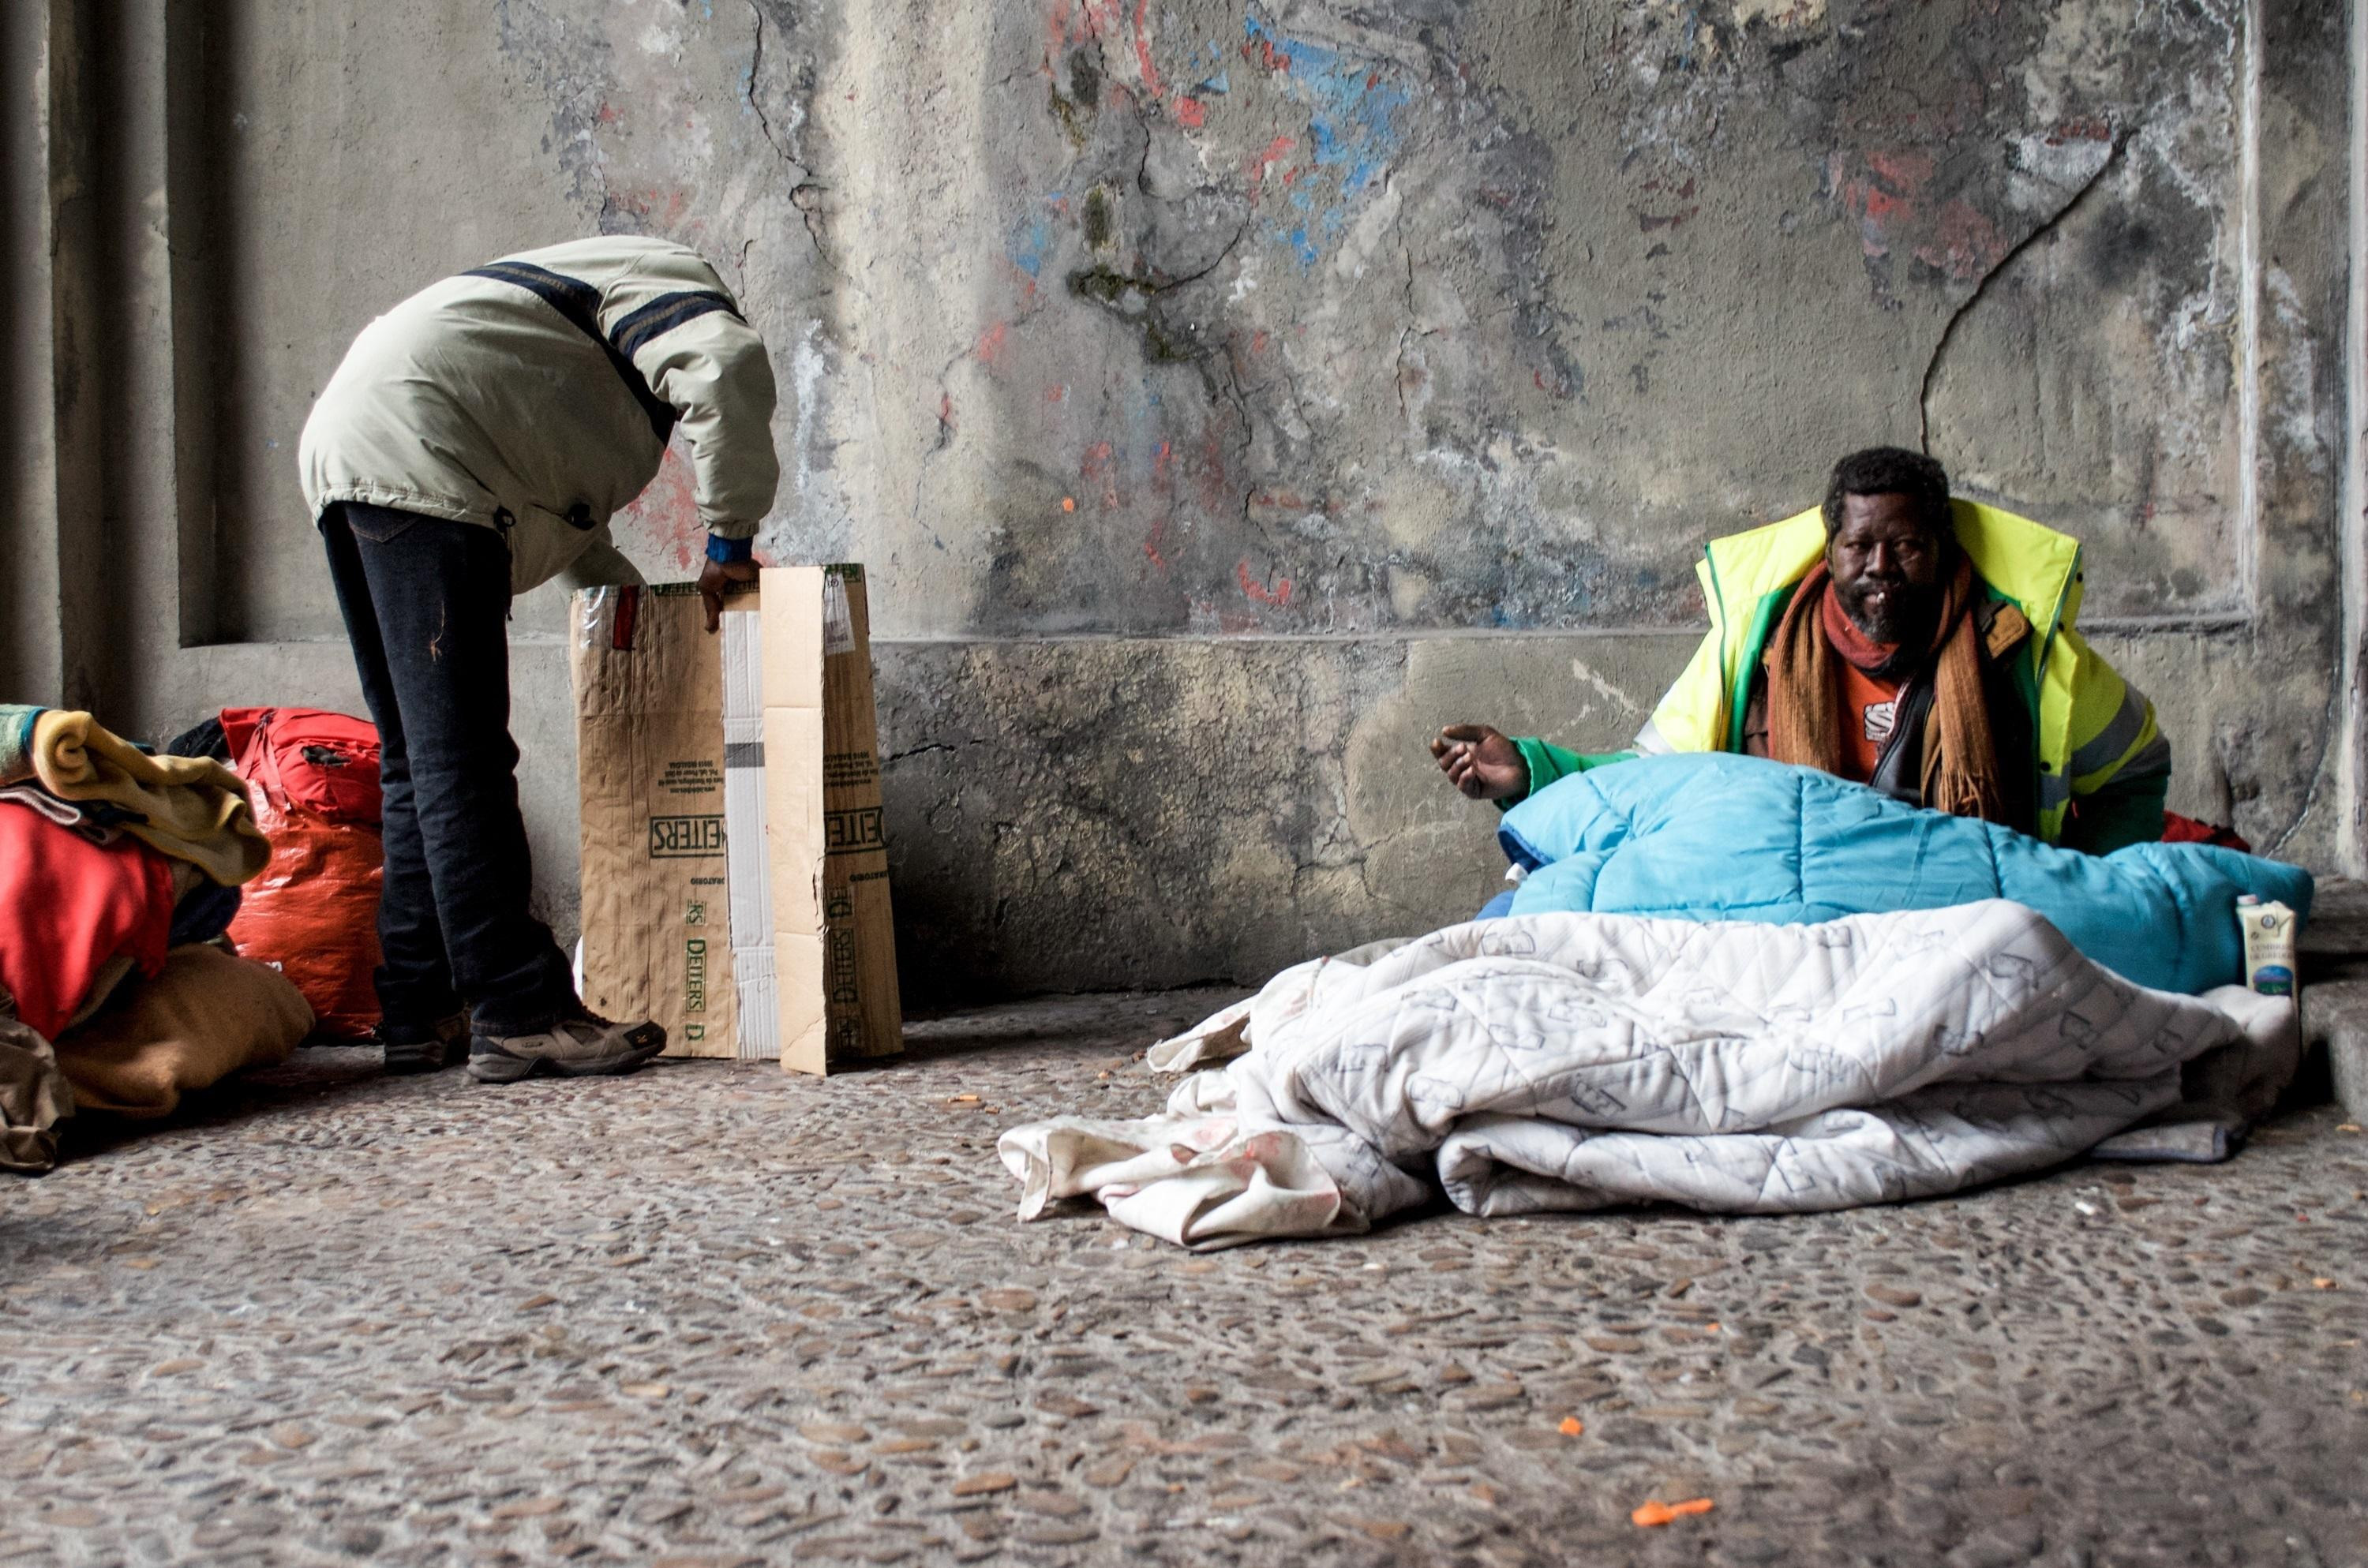 Varias personas sin hogar en una imagen de archivo / EUROPA PRESS